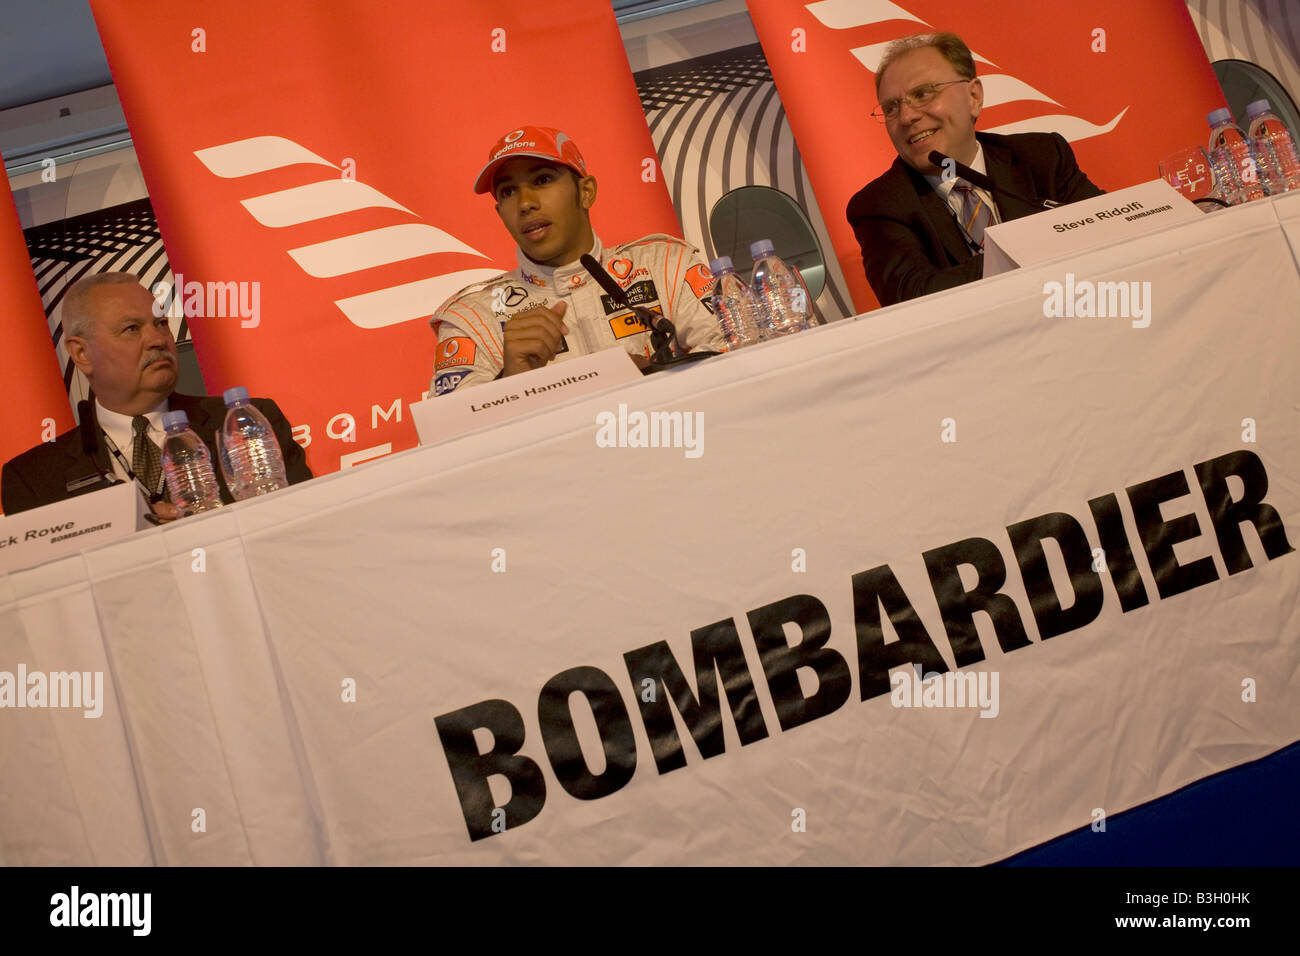 Formel 1-Fahrer Lewis Hamilton besucht eine Pressekonferenz veranstaltet von Flugzeugen Sponsor Bombardier deren Learjet er nutzt Stockfoto